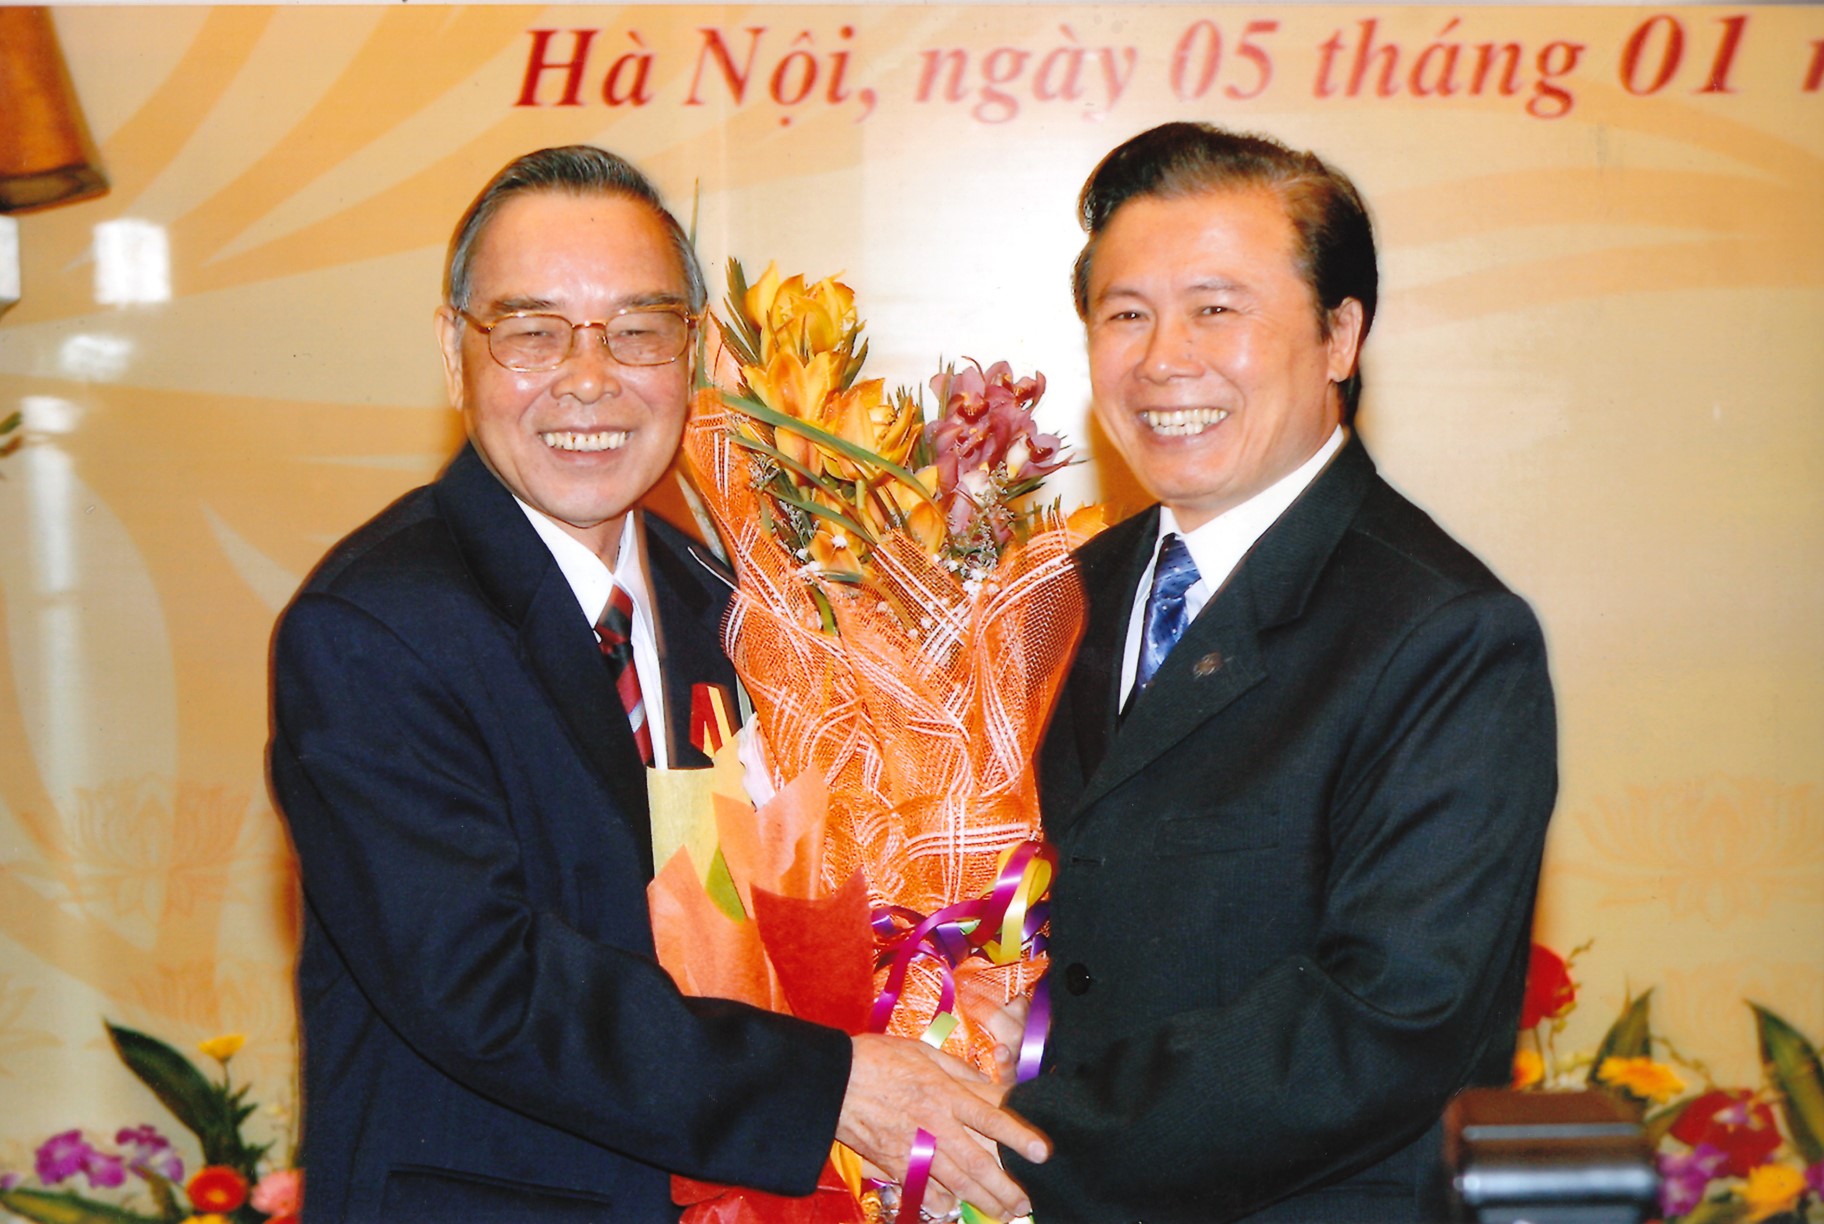 Nguyên Thủ tướng Phan Văn Khải và Thư ký Thủ tướng Phan Văn Khải, nguyên Phó Chủ nhiệm VPCP Trần Quốc Toản